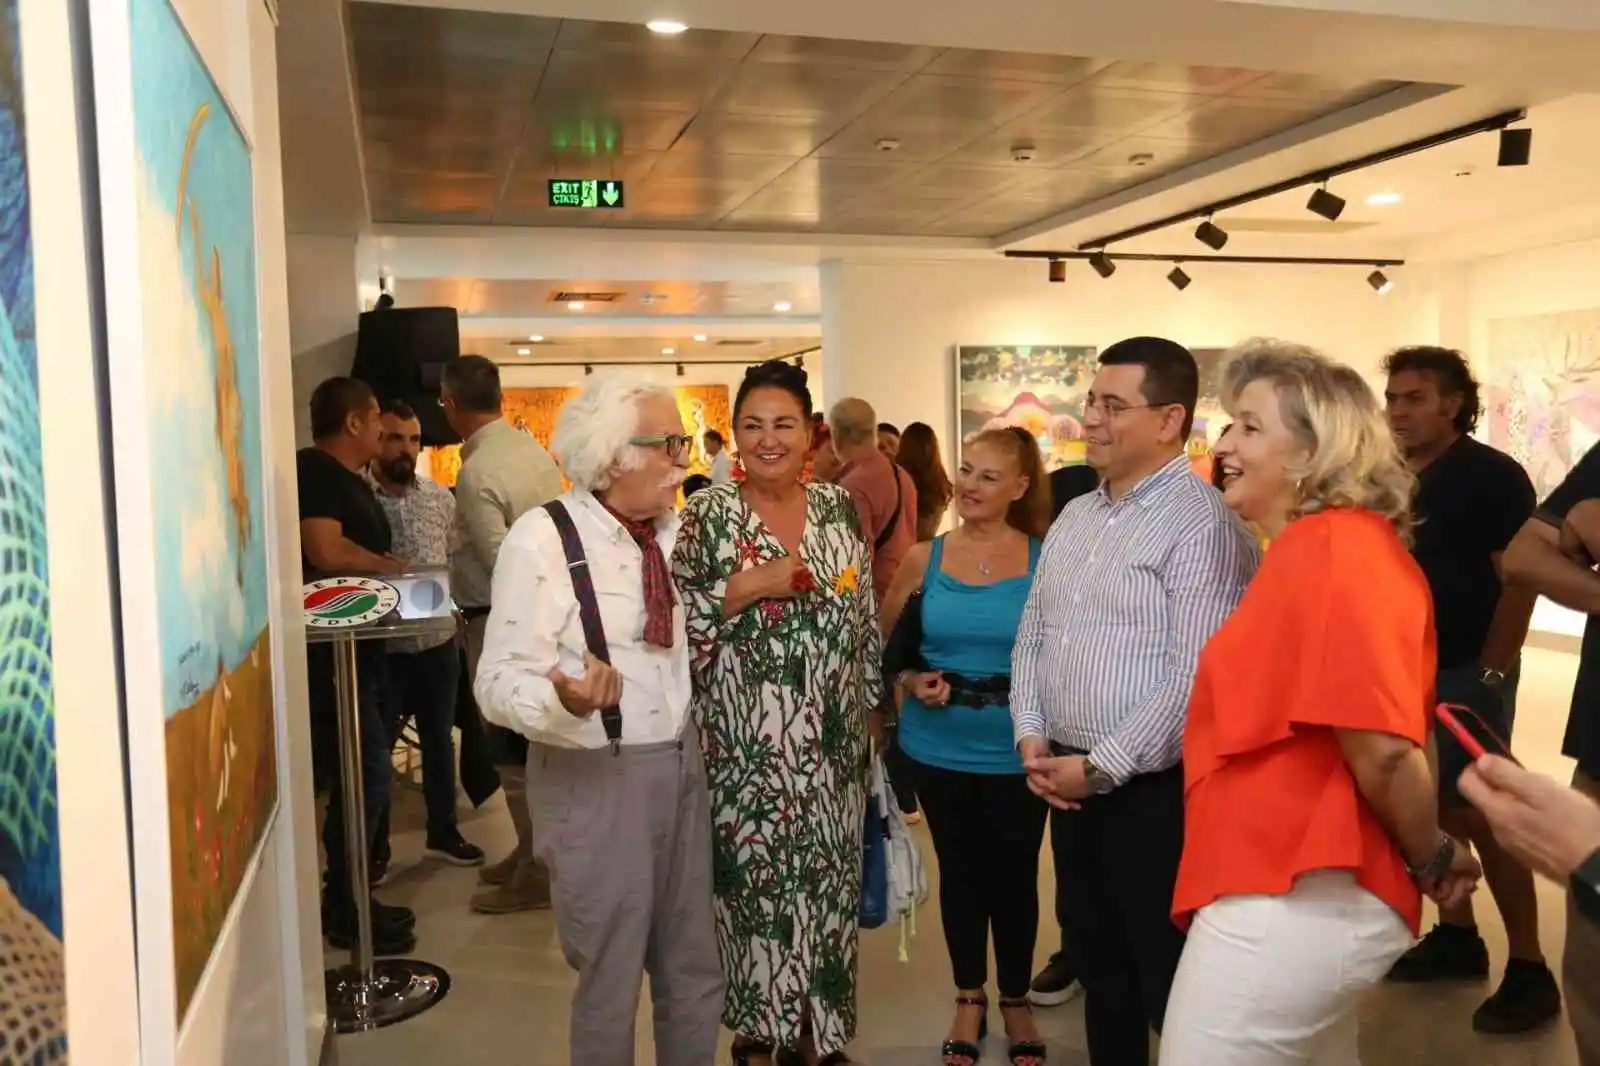 Uluslararası Antalya Resim Çalıştayı Sergisi kapılarını açtı
